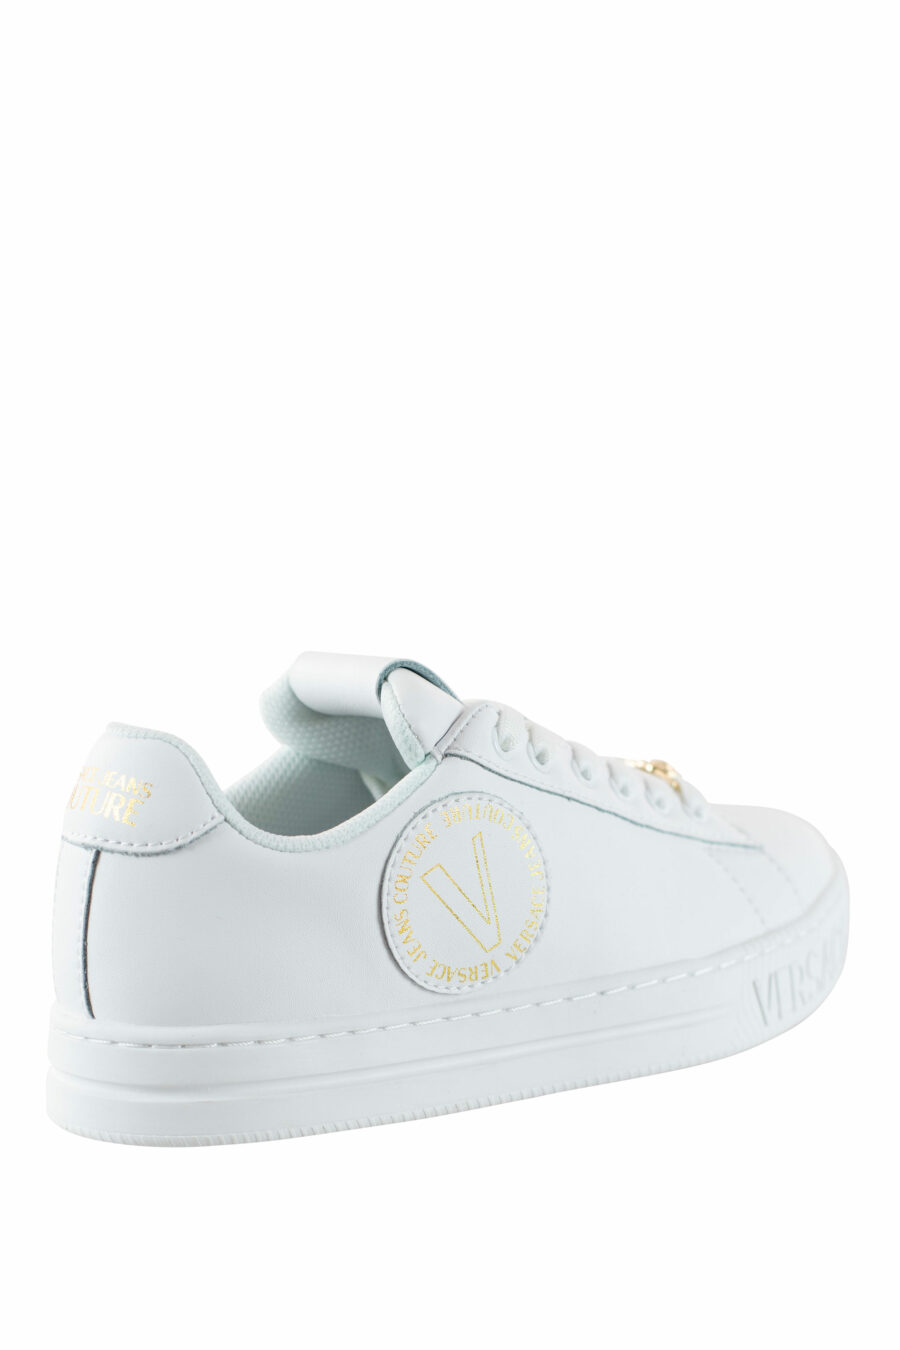 Zapatillas blancas y doradas con logo circular - IMG 4553